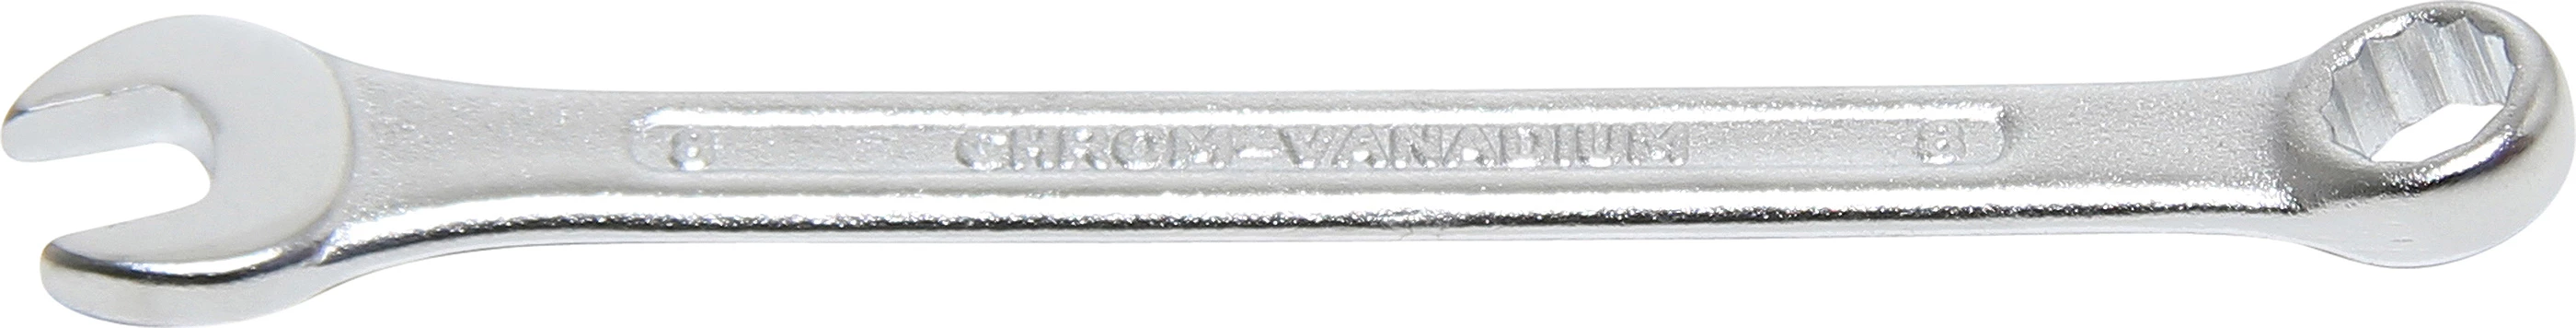 Maul-Ringschlüssel - SW 8 mm